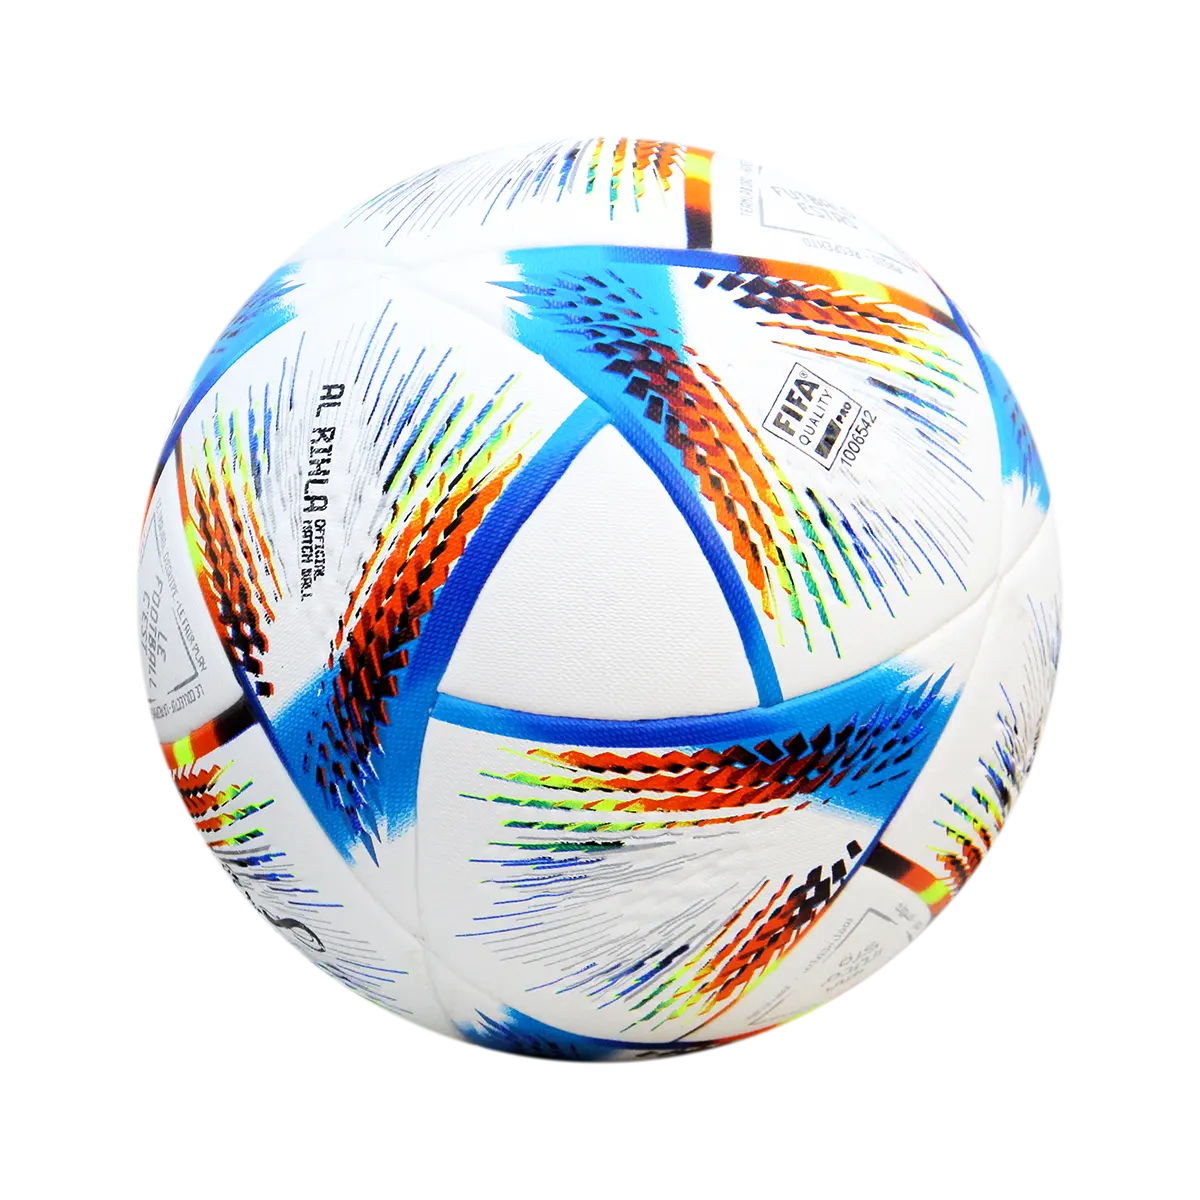 एओलान पूरी बिक्री उच्च गुणवत्ता वाले थर्मल बॉन्डेड फुटबॉल कस्टम सॉकर बॉल निर्माण